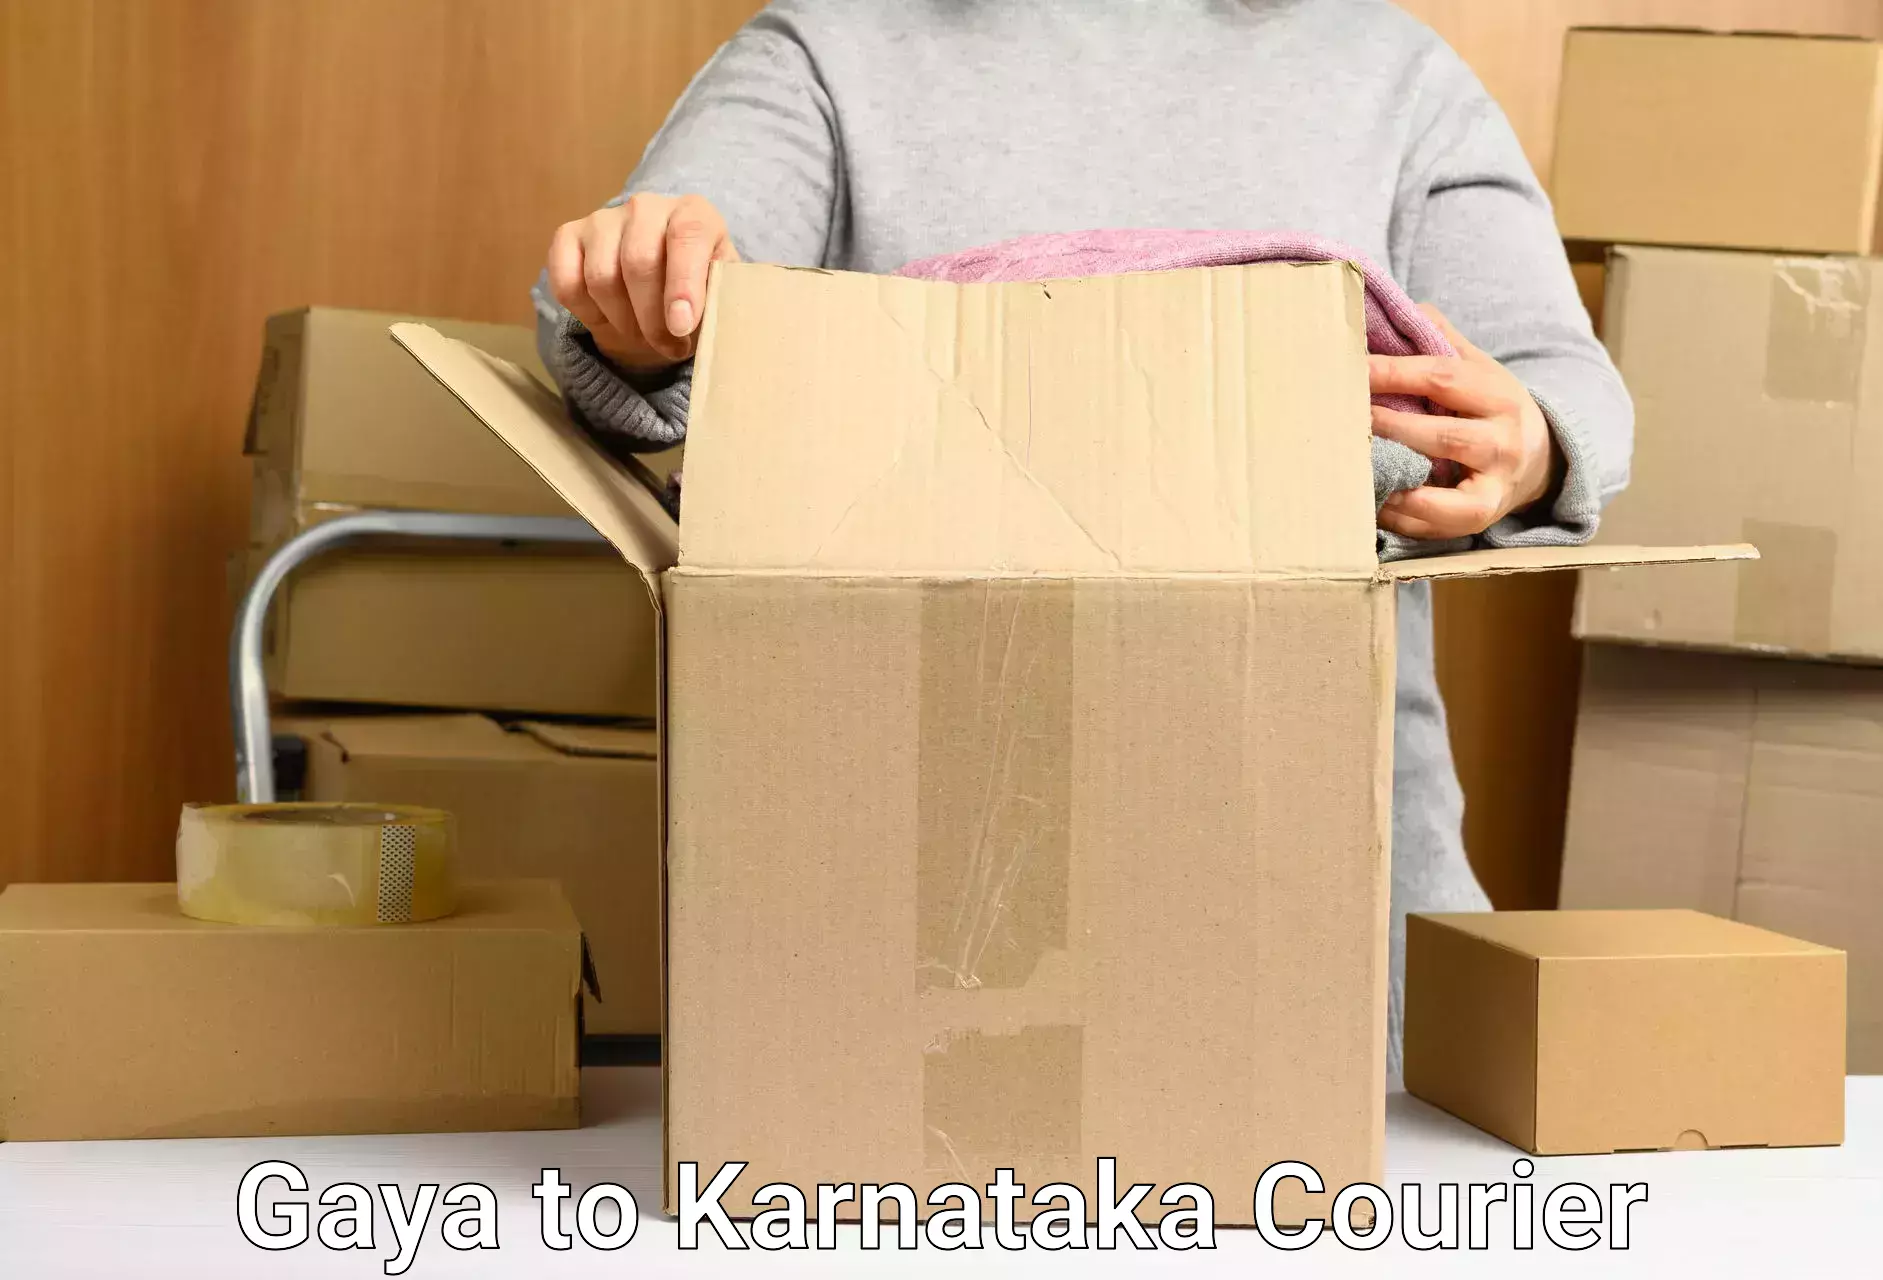 Reliable logistics providers Gaya to Karnataka